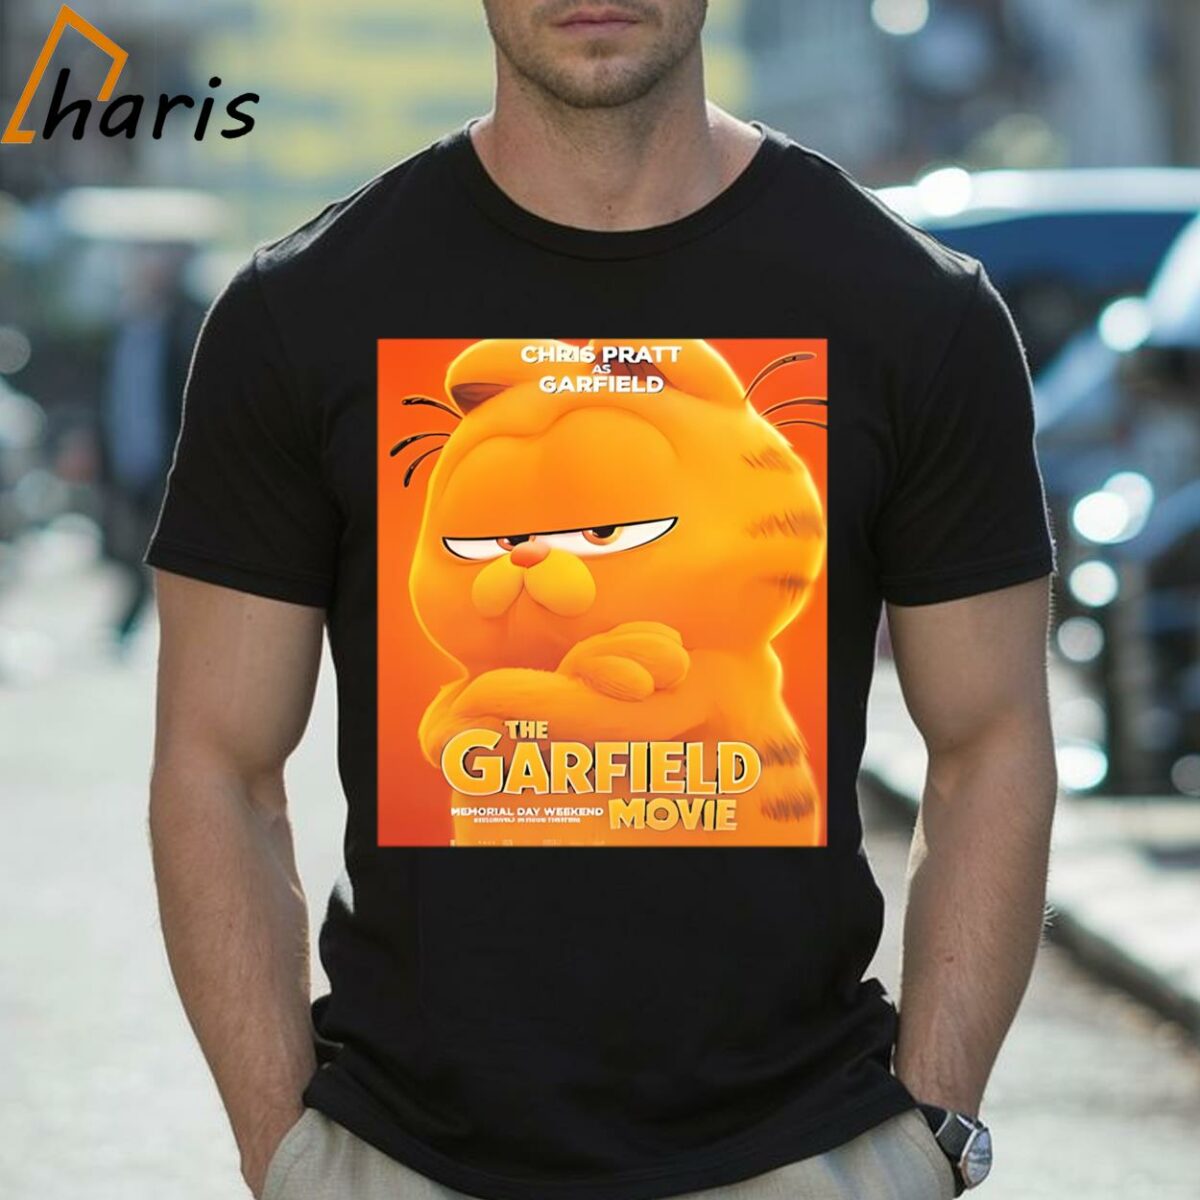 Chris Pratt As Garfield In The Garfield Movie Shirt 2 Shirt